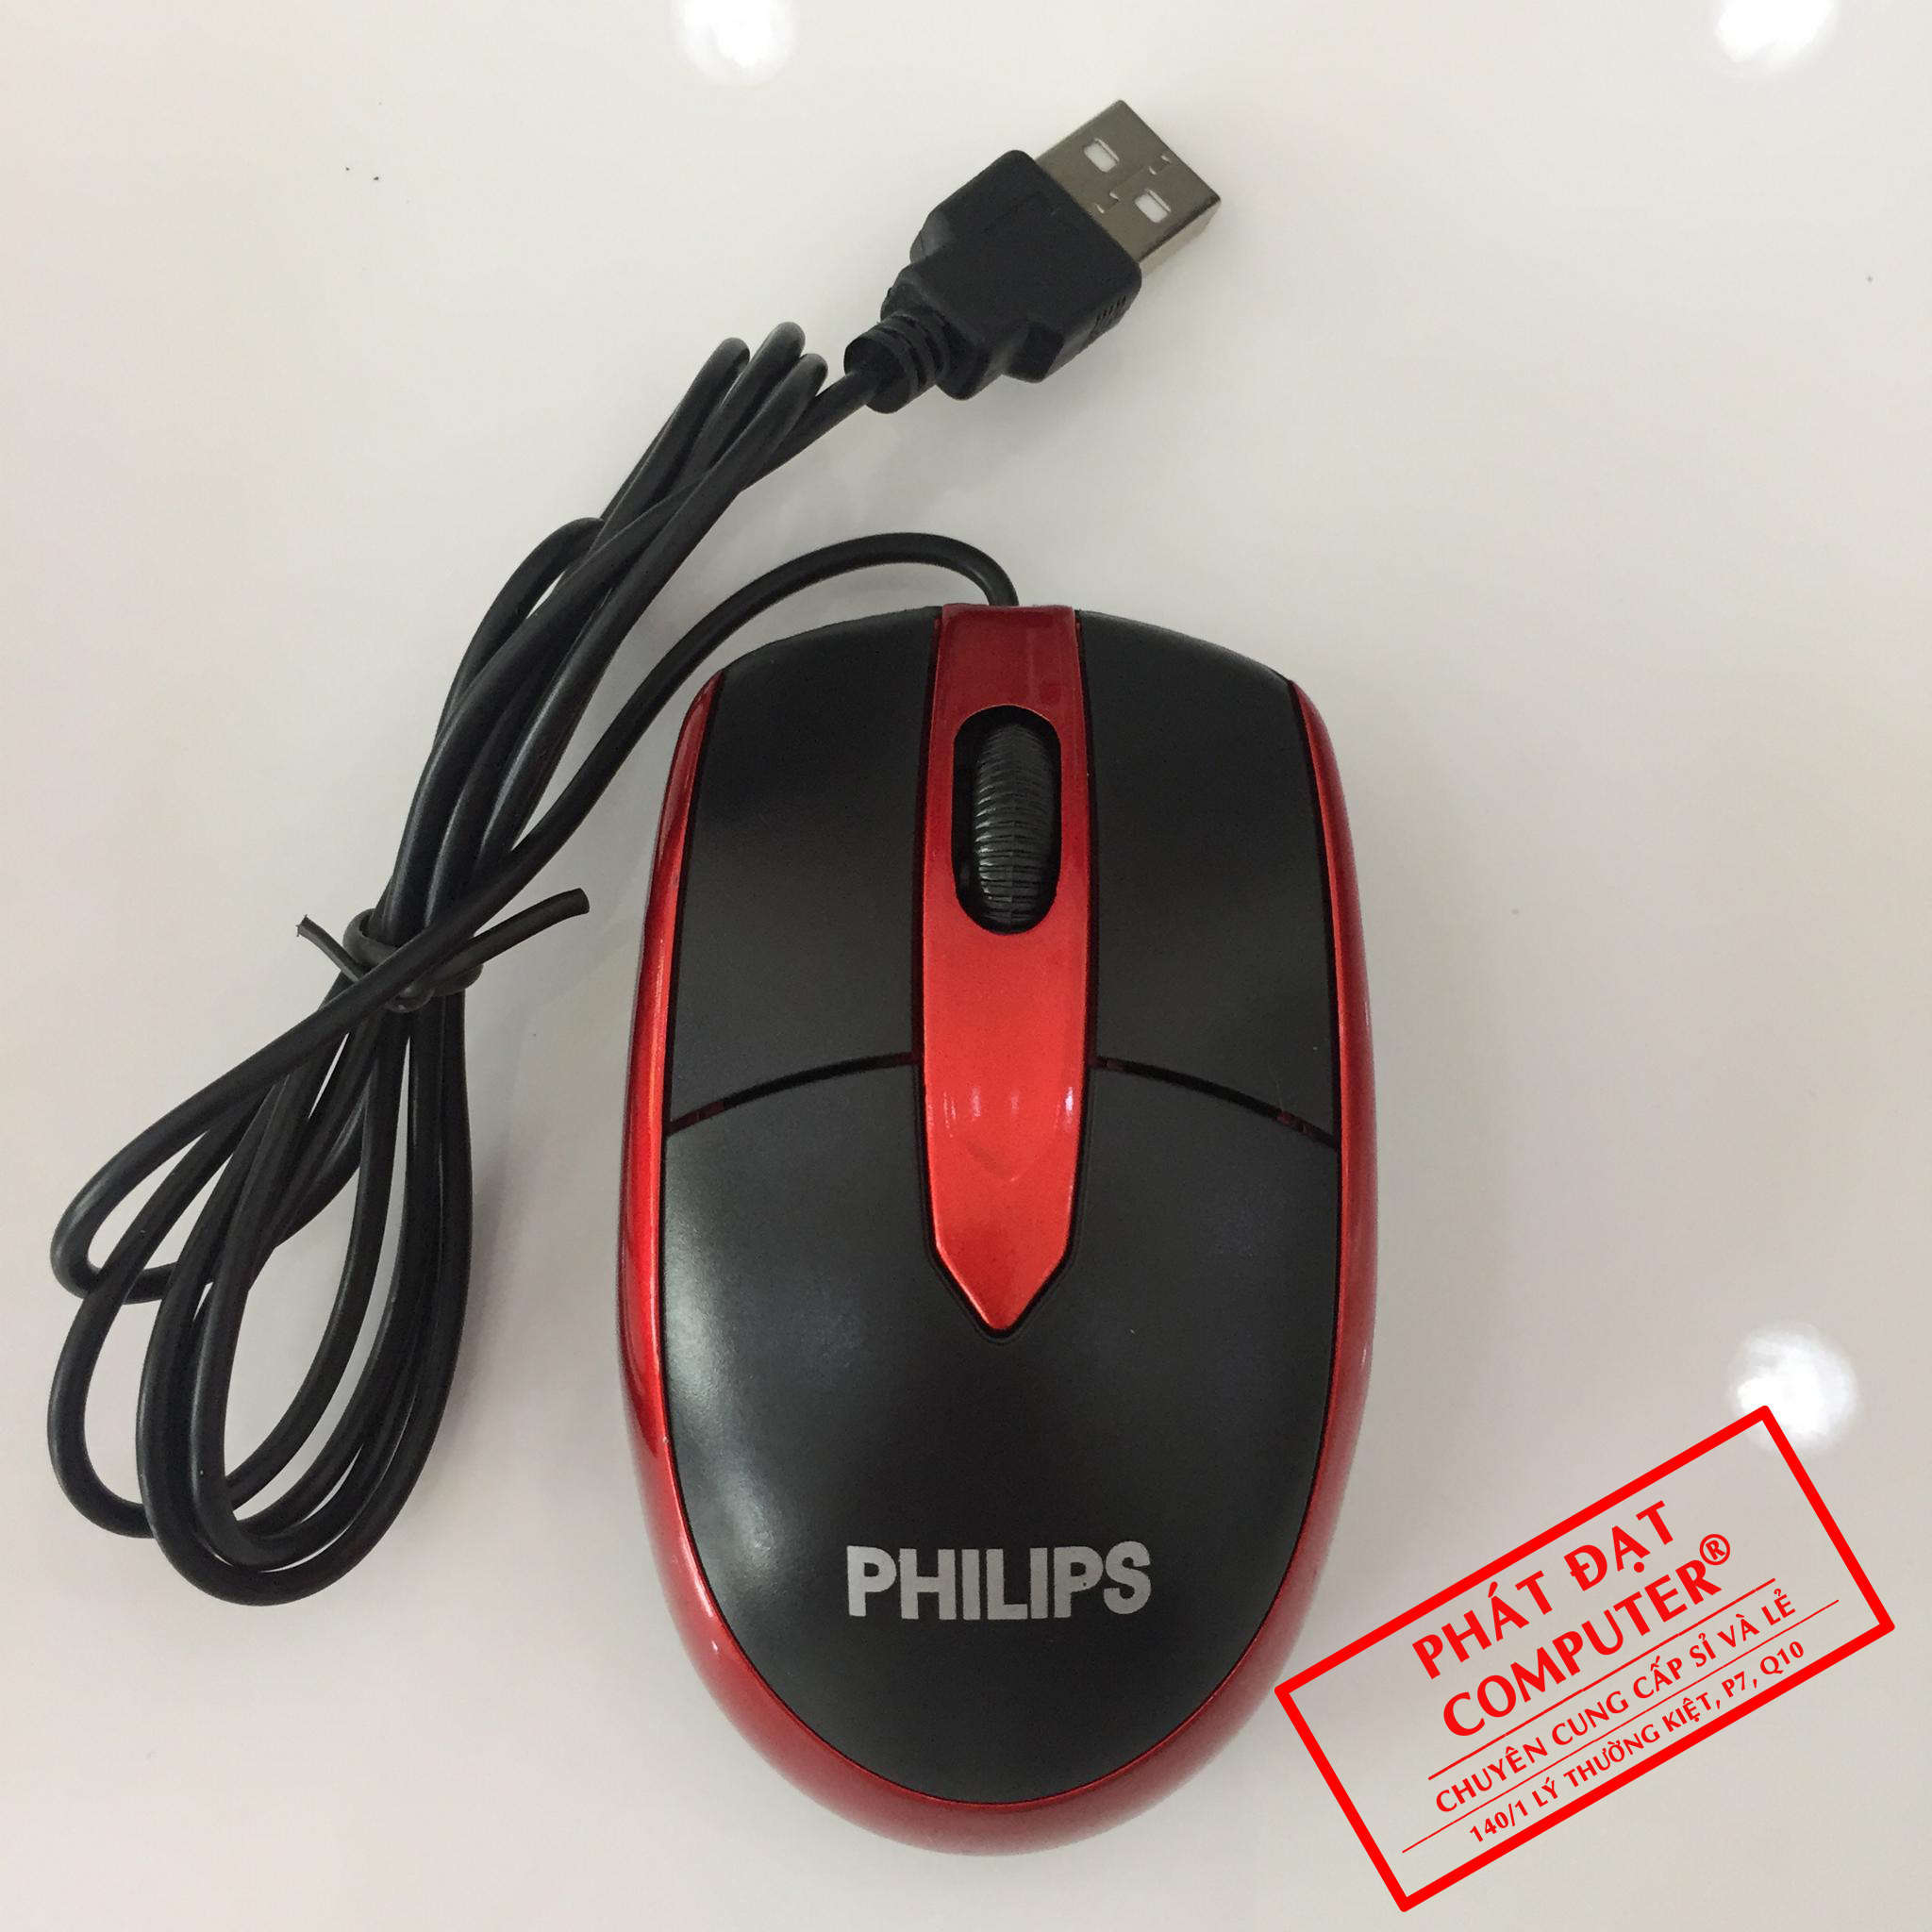 Mouse PHILIP/TOSHIBA Đỏ USB